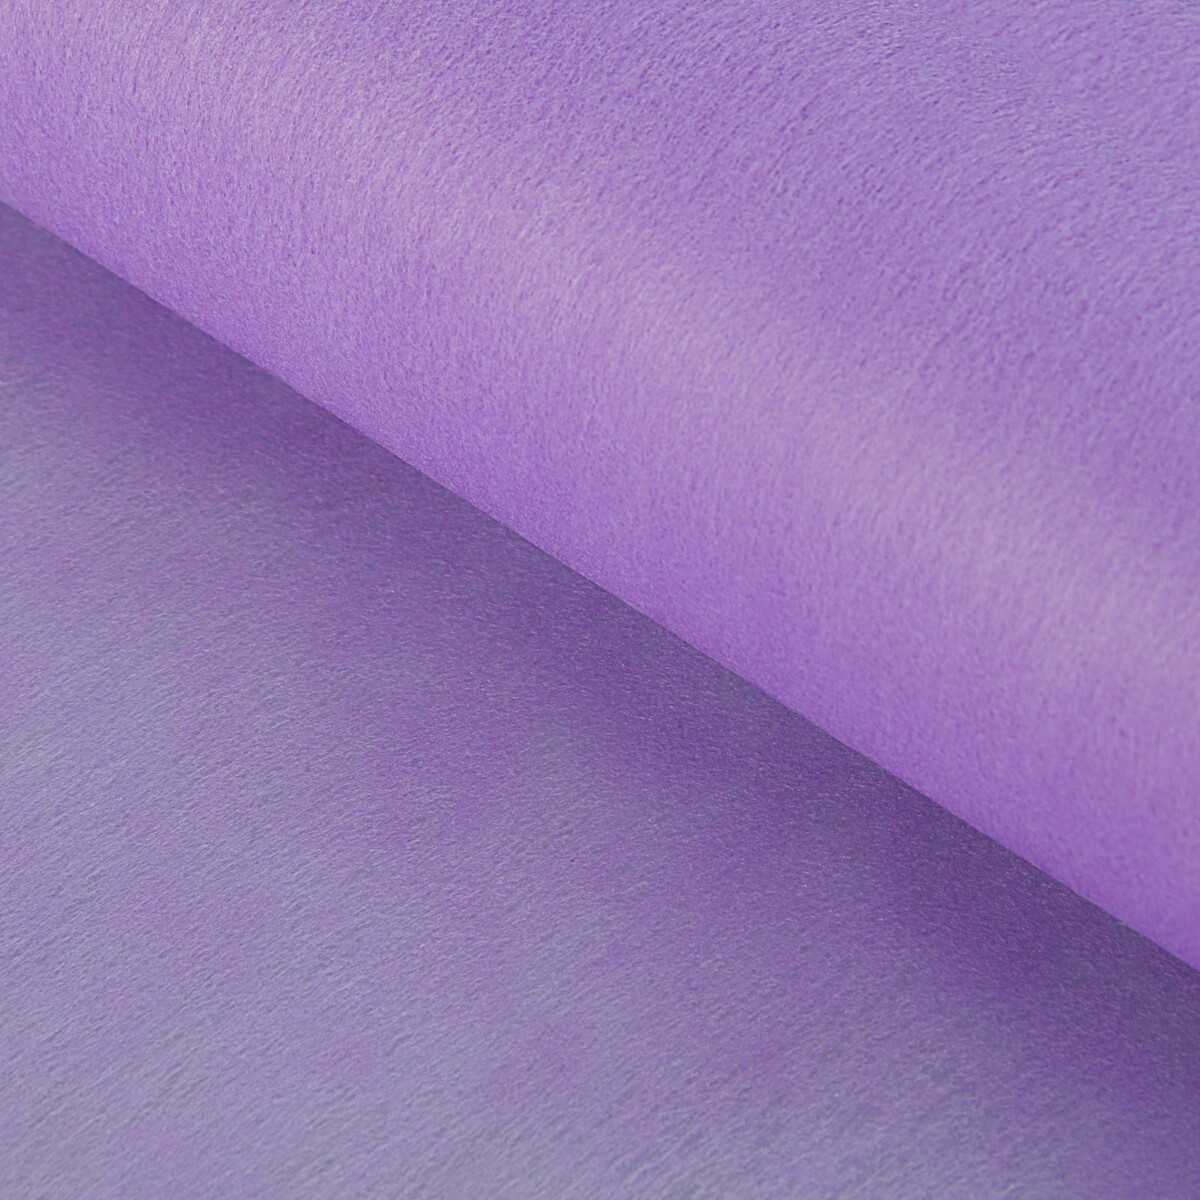 Фетр для упаковок и поделок, однотонный, светло-сиреневый, двусторонний, рулон 1шт., 50 см x 15 м фетр для упаковок и поделок однотонный ярко розовый однотонный двусторонний рулон 1шт 50 см x 15 м